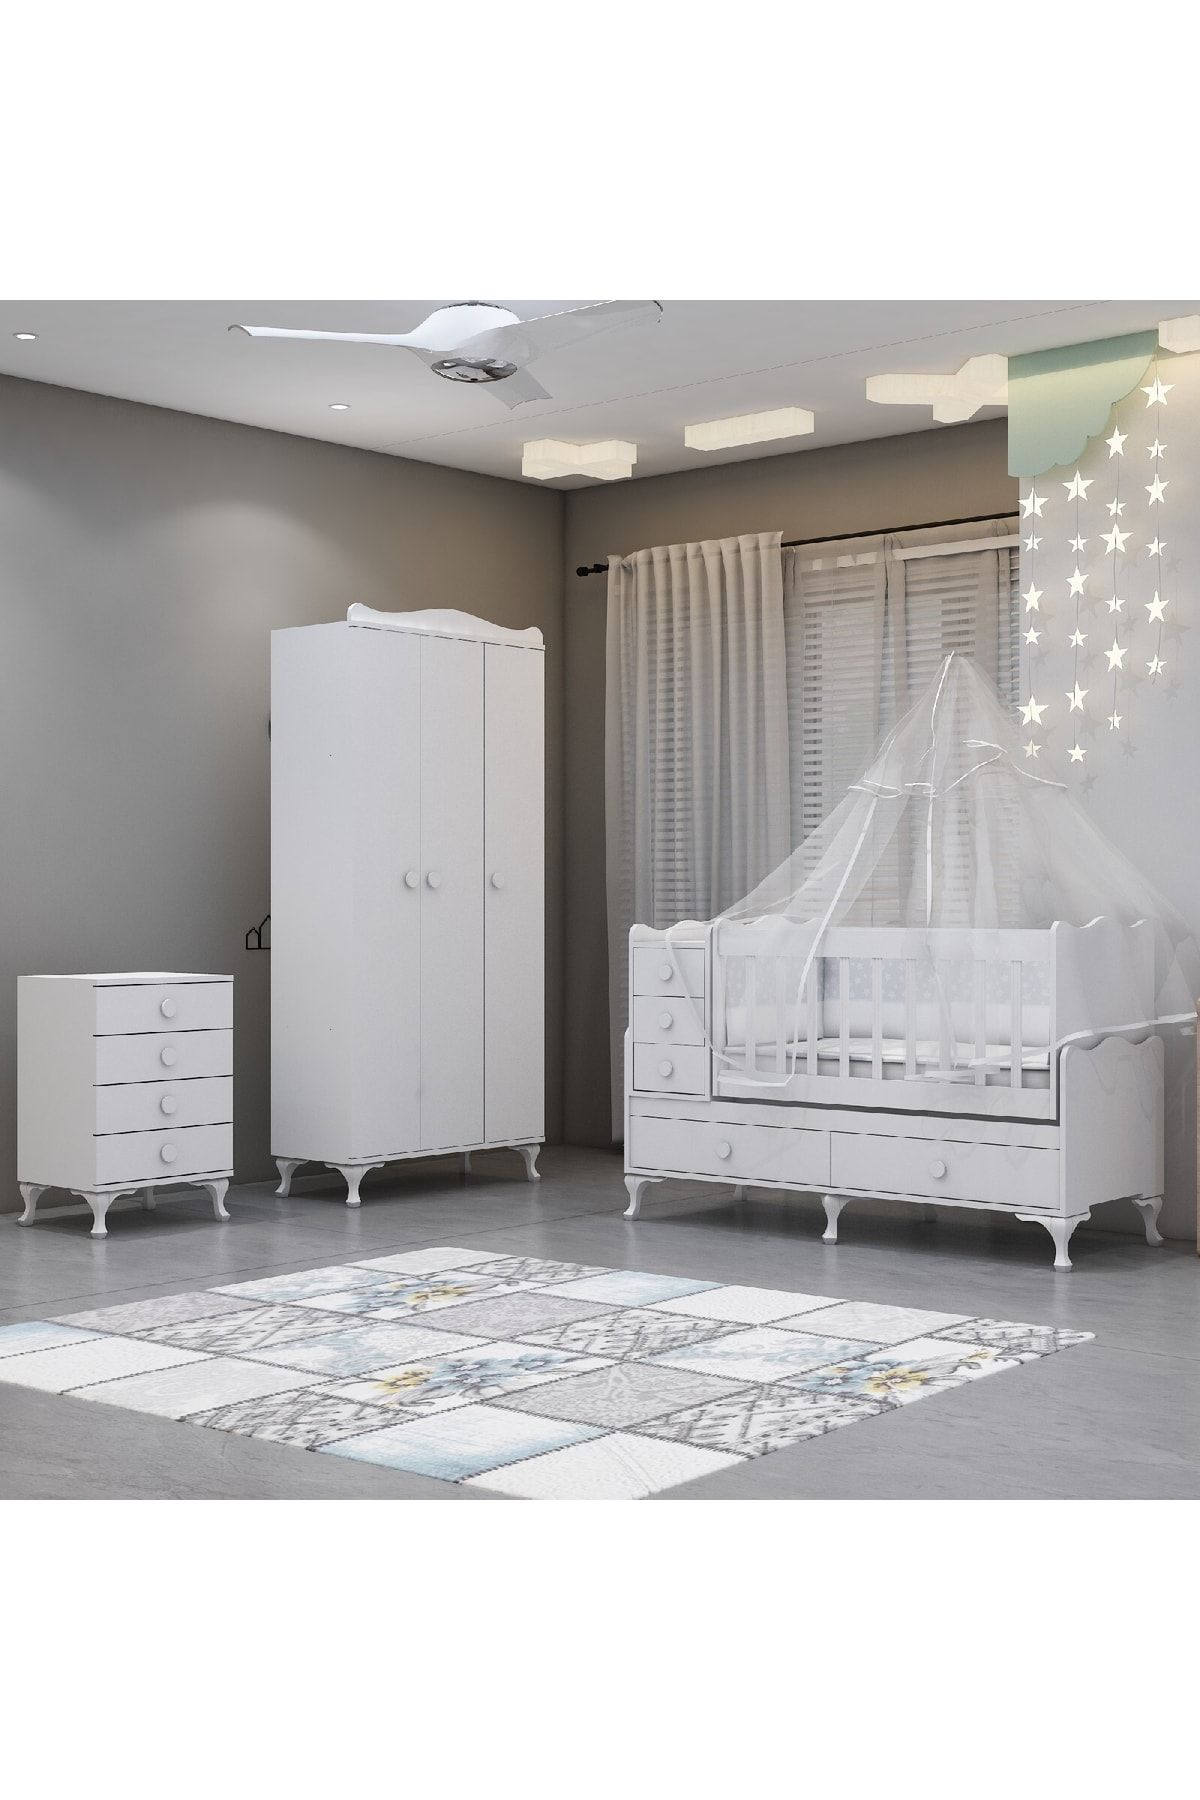 Garaj Home Alya Yıldız 3 Bebek Odası Takımı - Yatak Ve Uyku Seti Kombinli-uyku Seti-krem